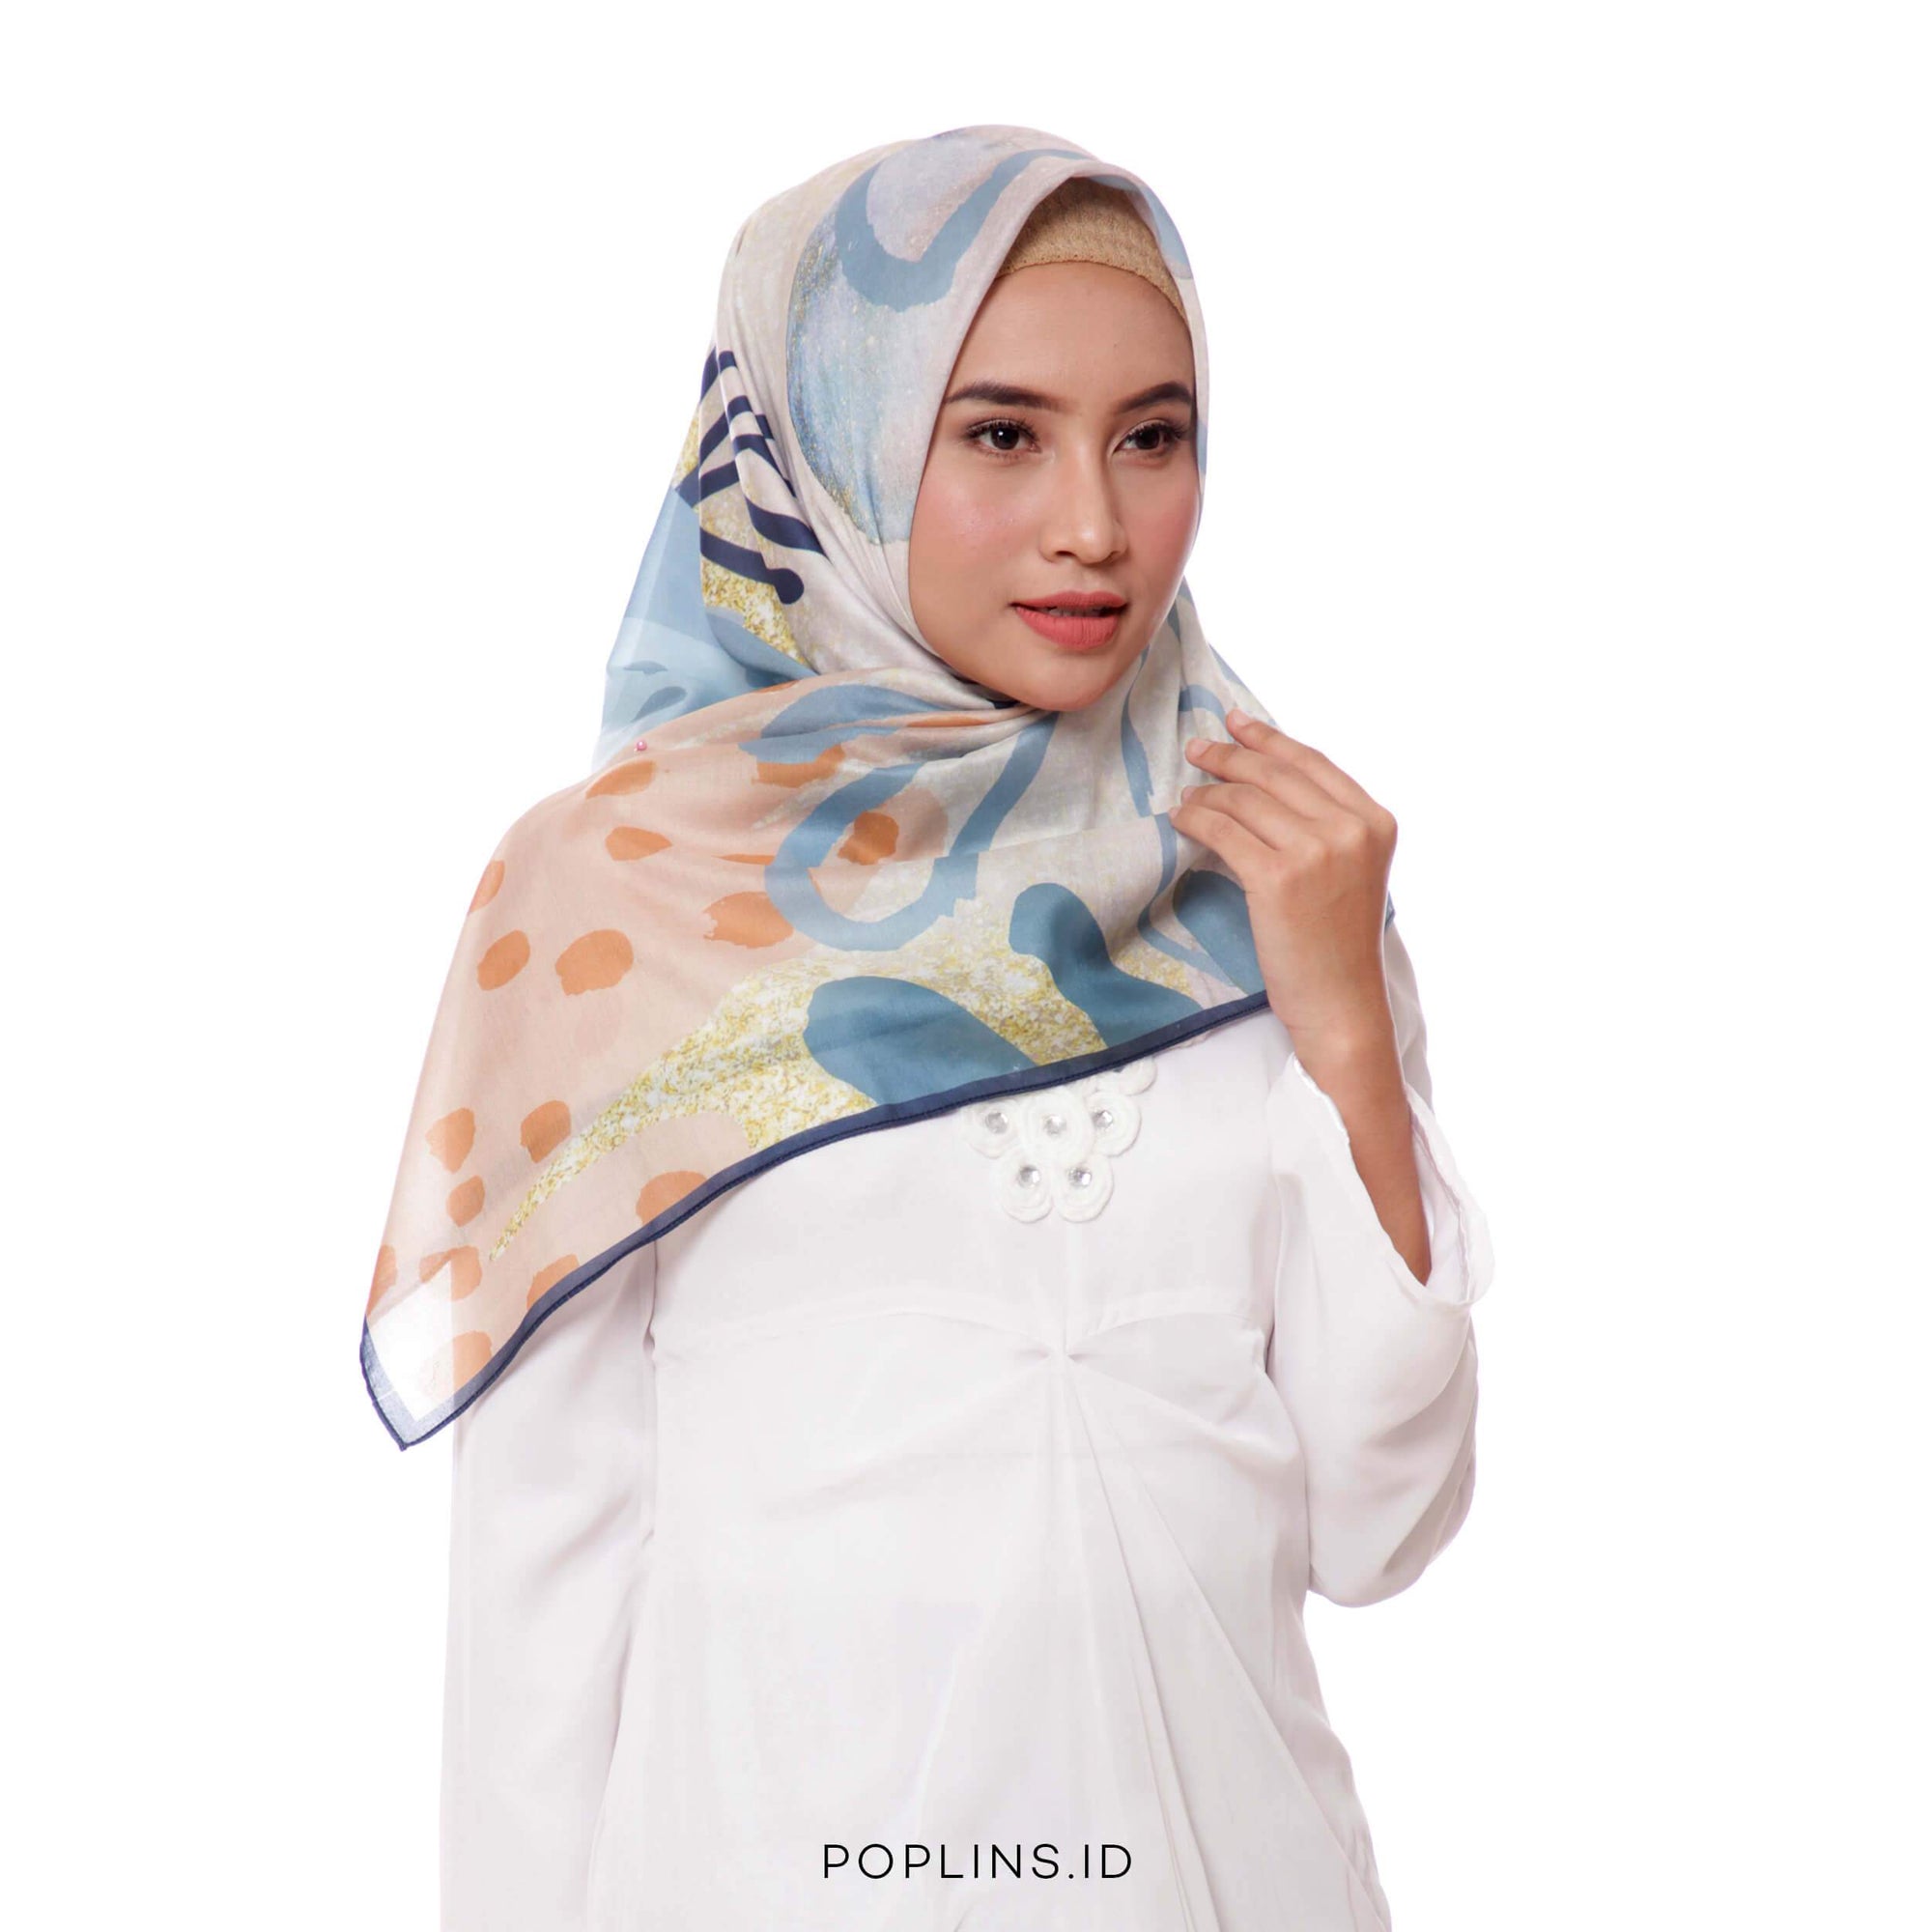 Poplins Pitaloka - Beautiful Hijab Styles